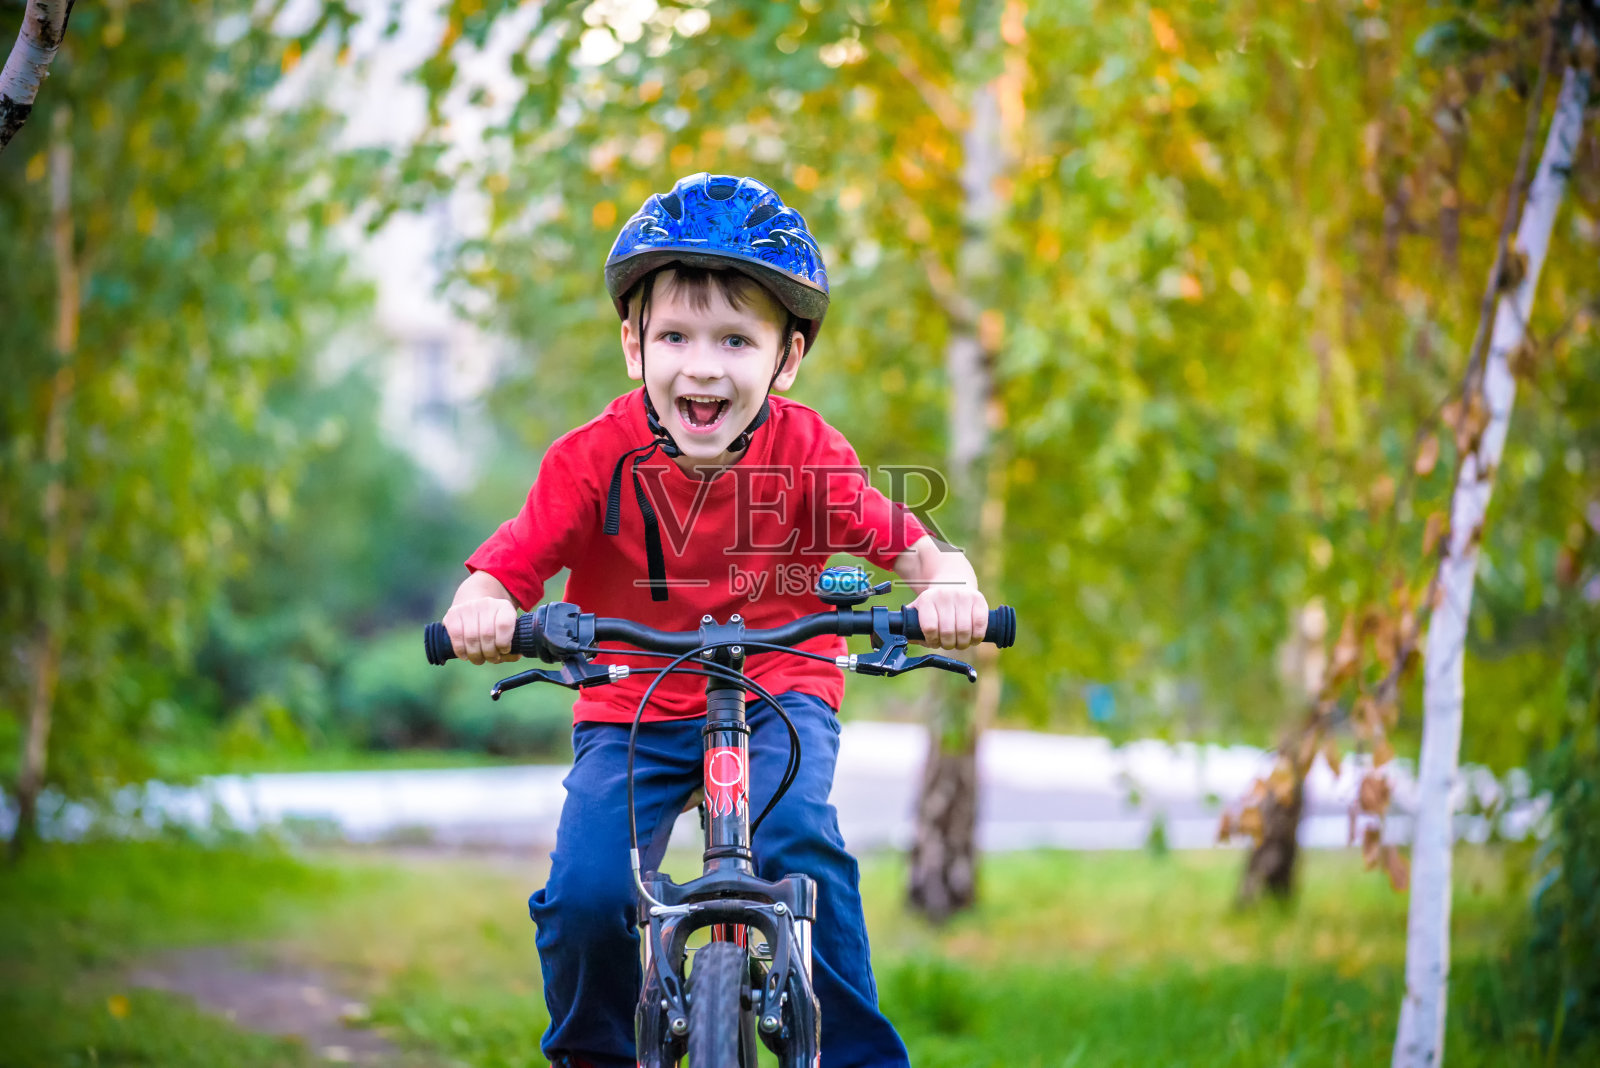 一个戴着防护头盔的白色小男孩坐在一辆儿童自行车上。蹒跚学步的孩子骑着红色两轮自行车朝前看。孩子脸上露出狡黠的微笑照片摄影图片